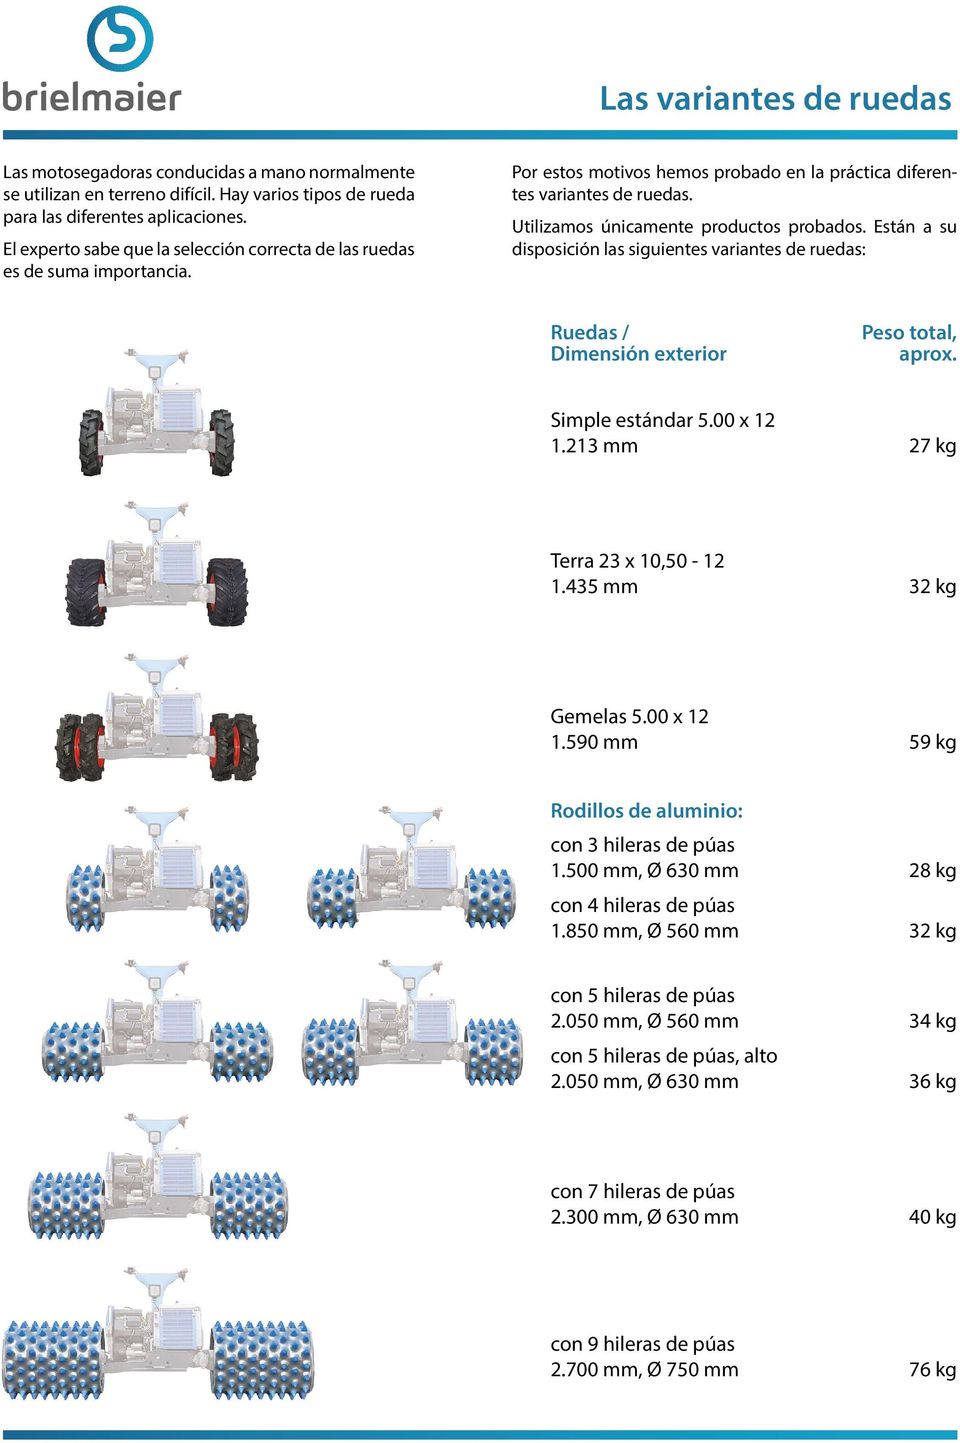 Están a su disposición las siguientes variantes de ruedas: Ruedas / Dimensión exterior Peso total, aprox. Simple estándar 5.00 x 12 1.213 mm 27 kg Terra 23 x 10,50-12 1.435 mm 32 kg Gemelas 5.